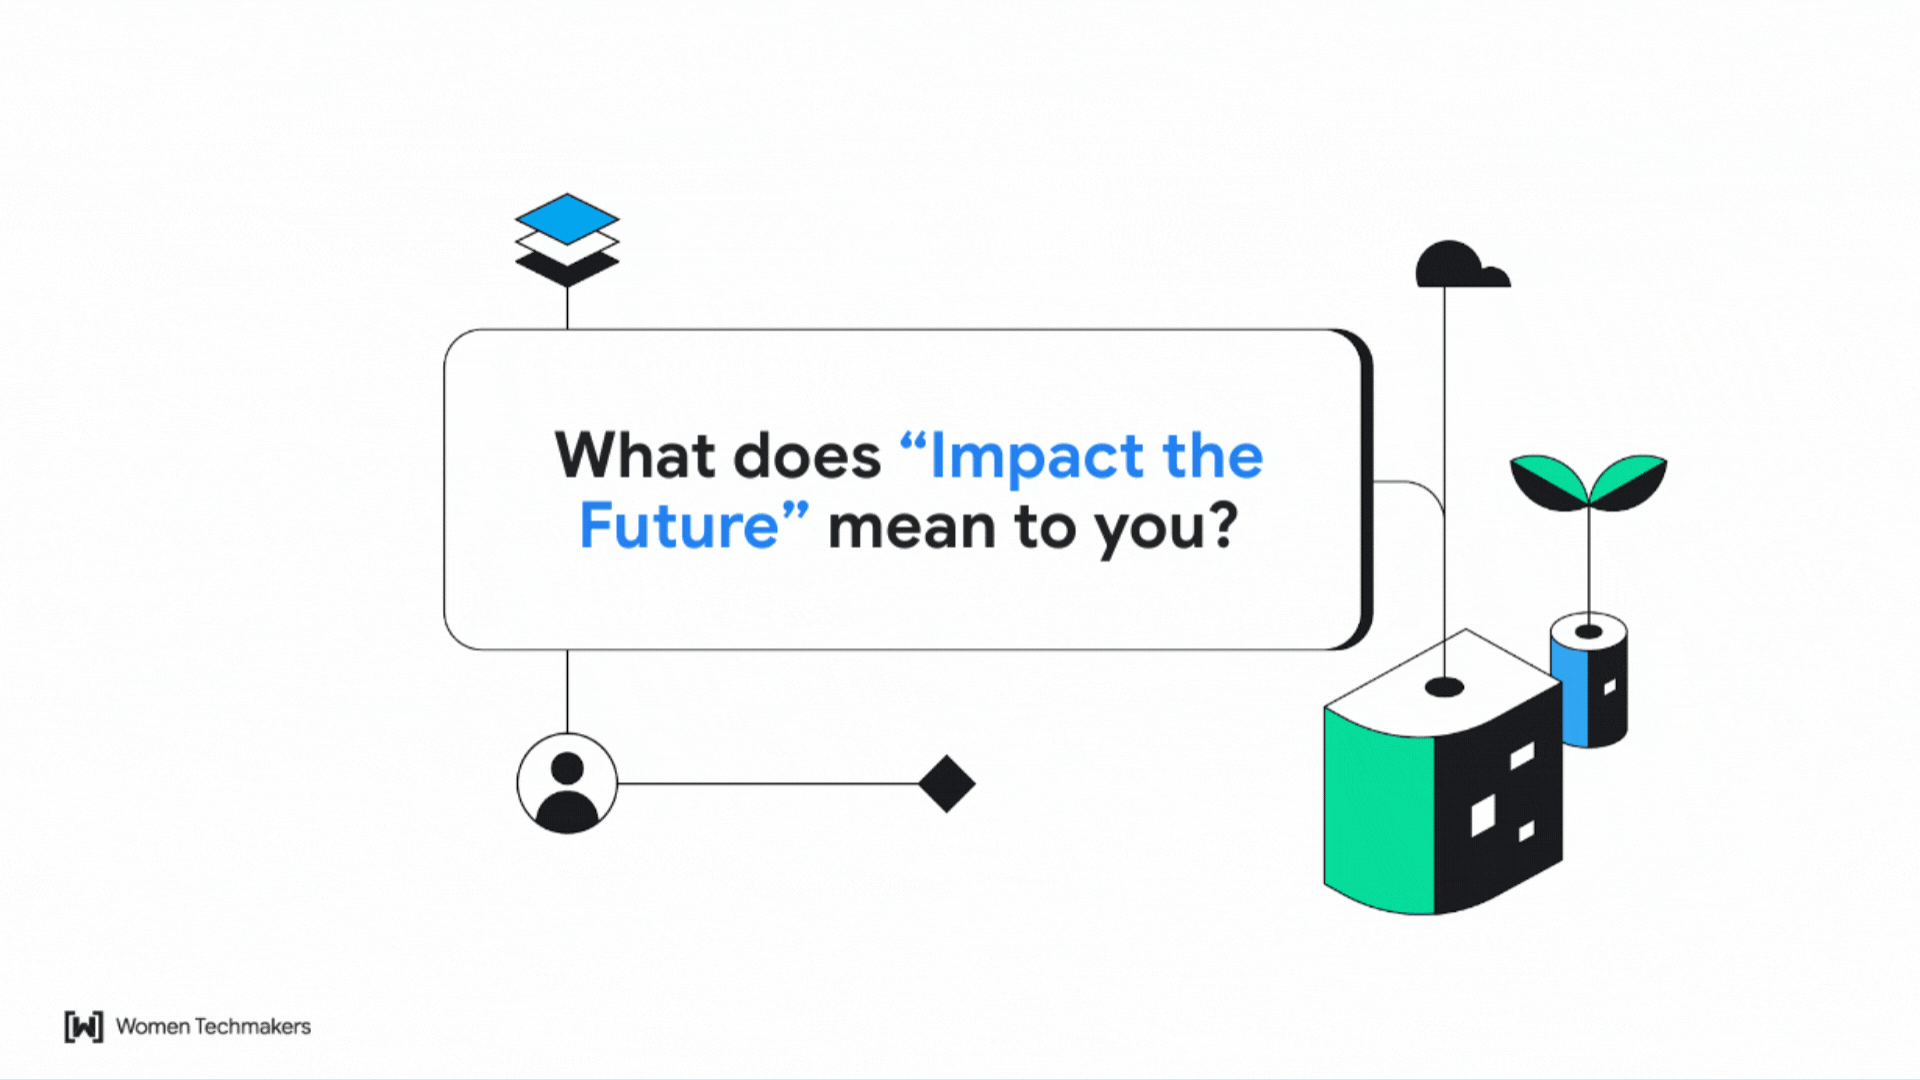 來自 Women Techmakers 成員的動畫引言，主題為「Impact the Future」。會員可以分享自己的想法和靈感，透過科技開創更美好的未來。